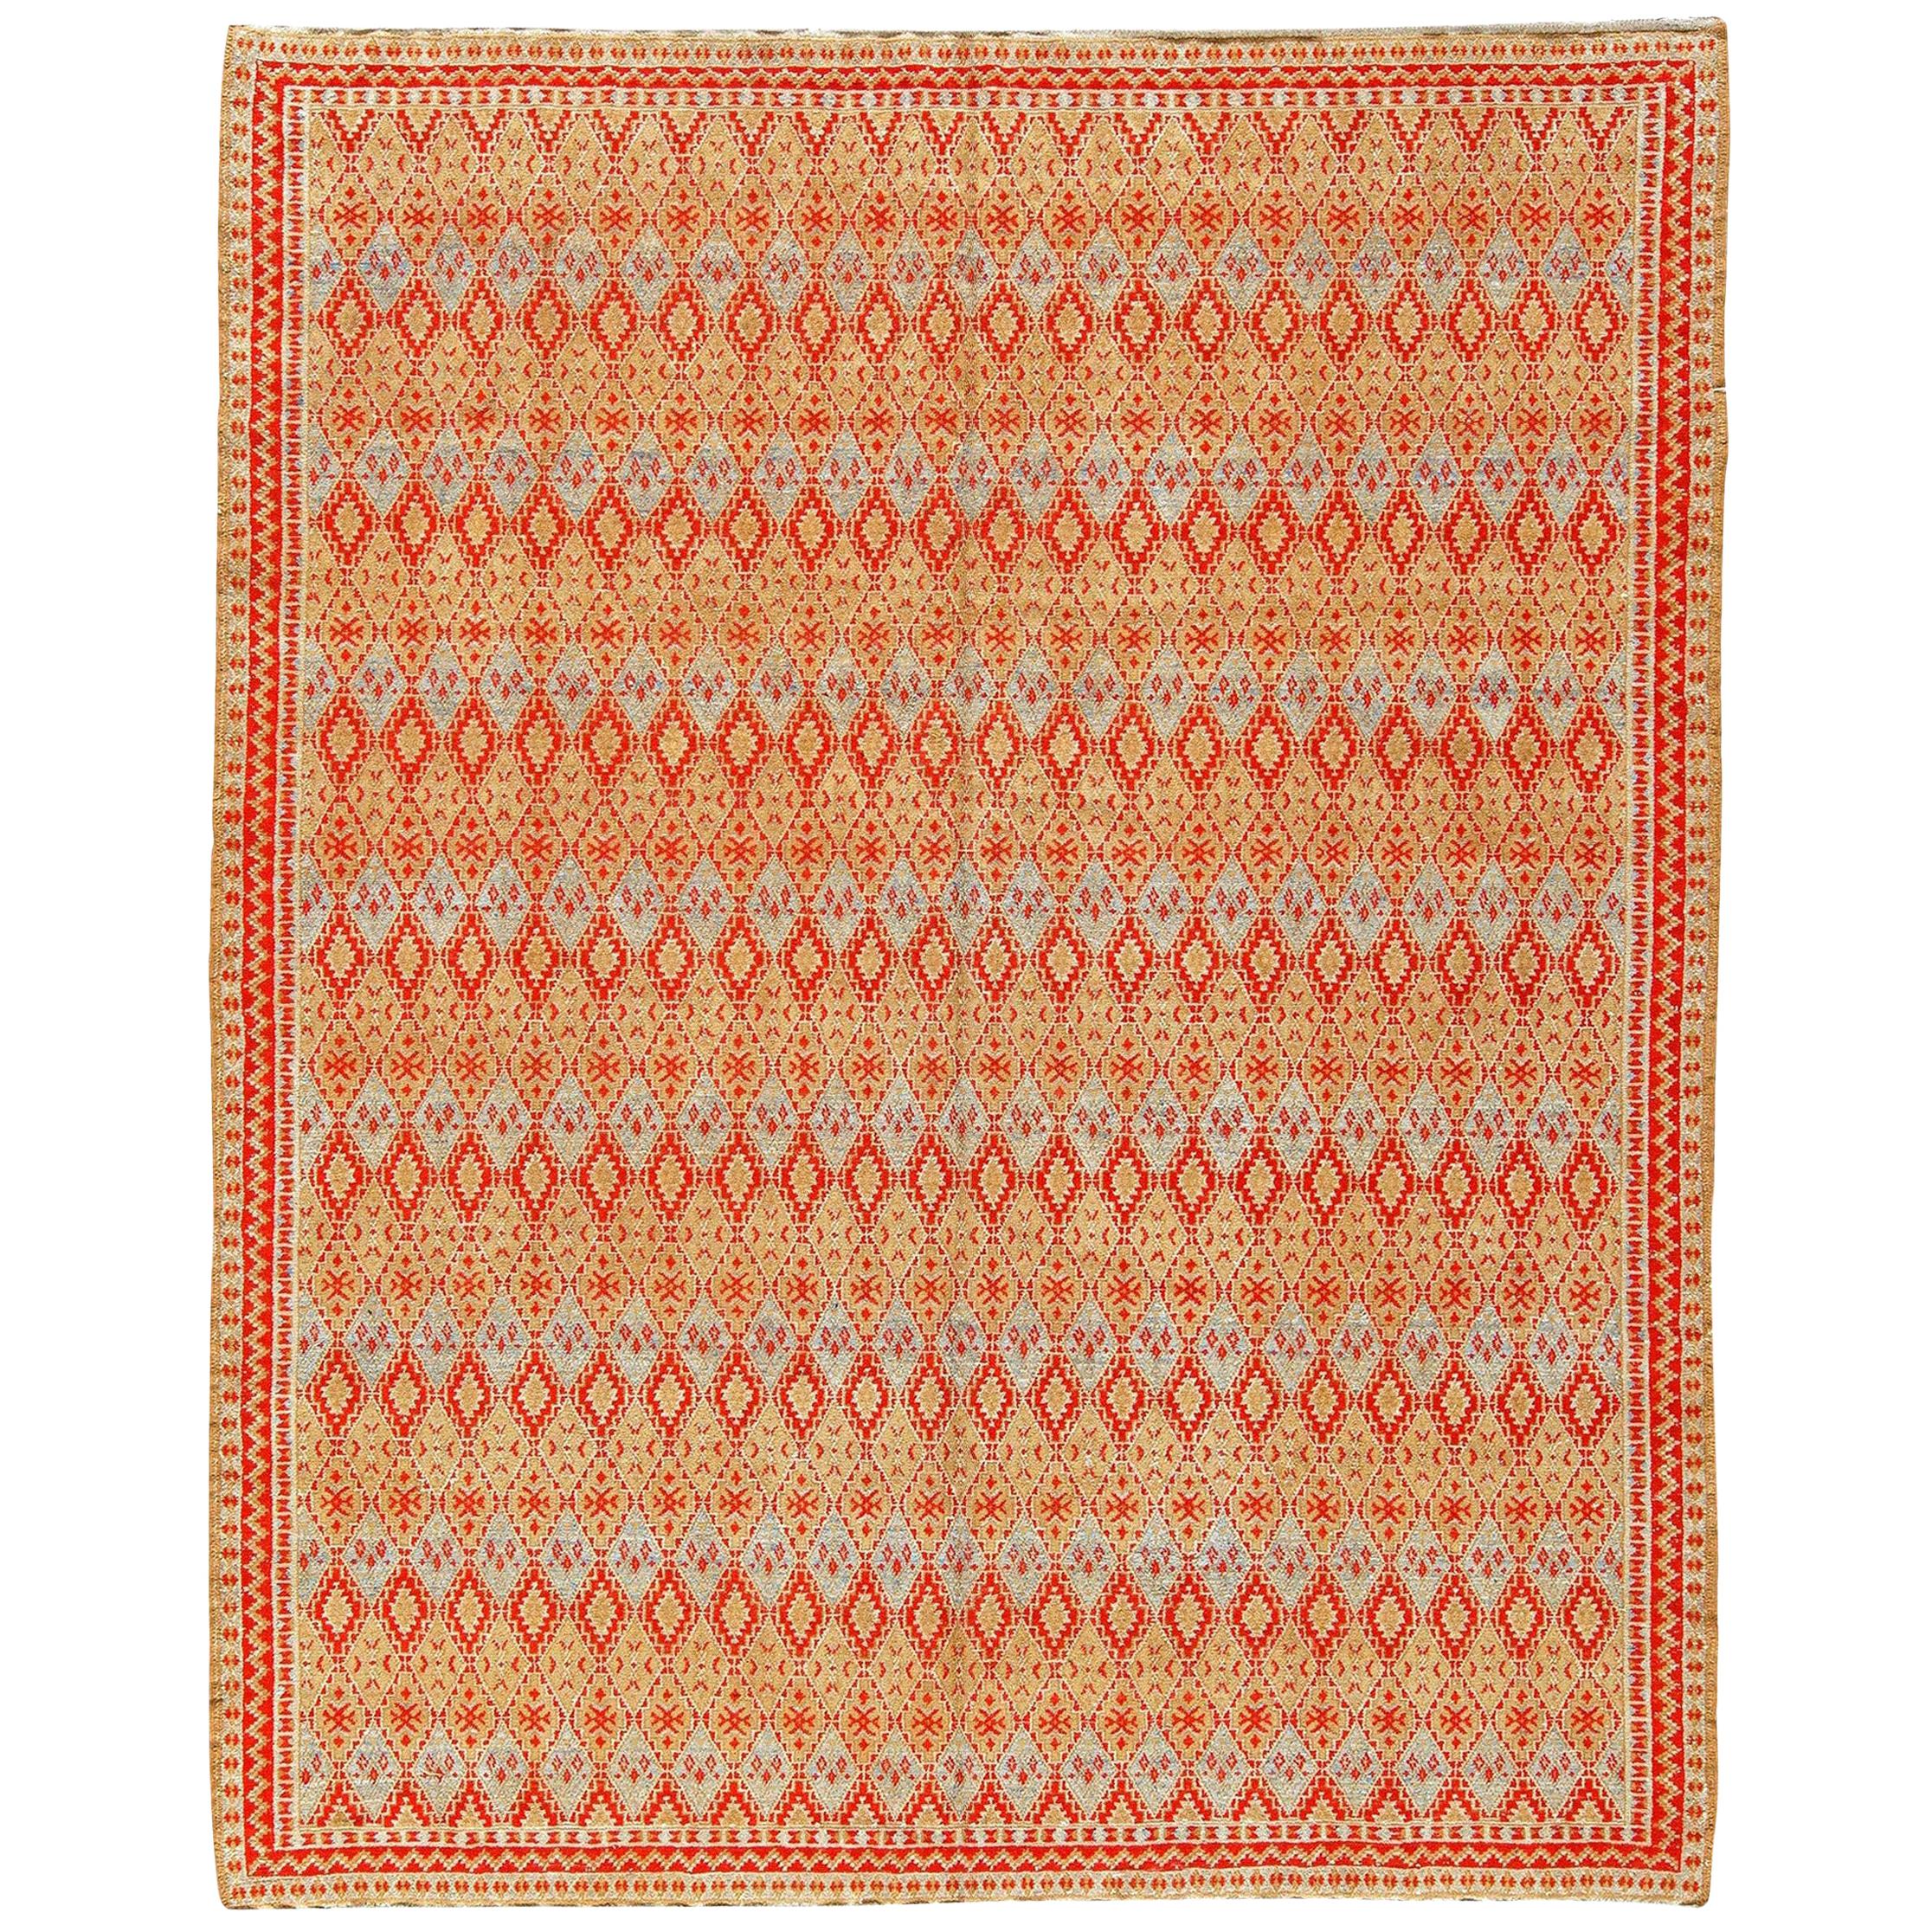 Mid-20th Century Tribal Moroccan Handmade Wool Rug by Doris Leslie Blau